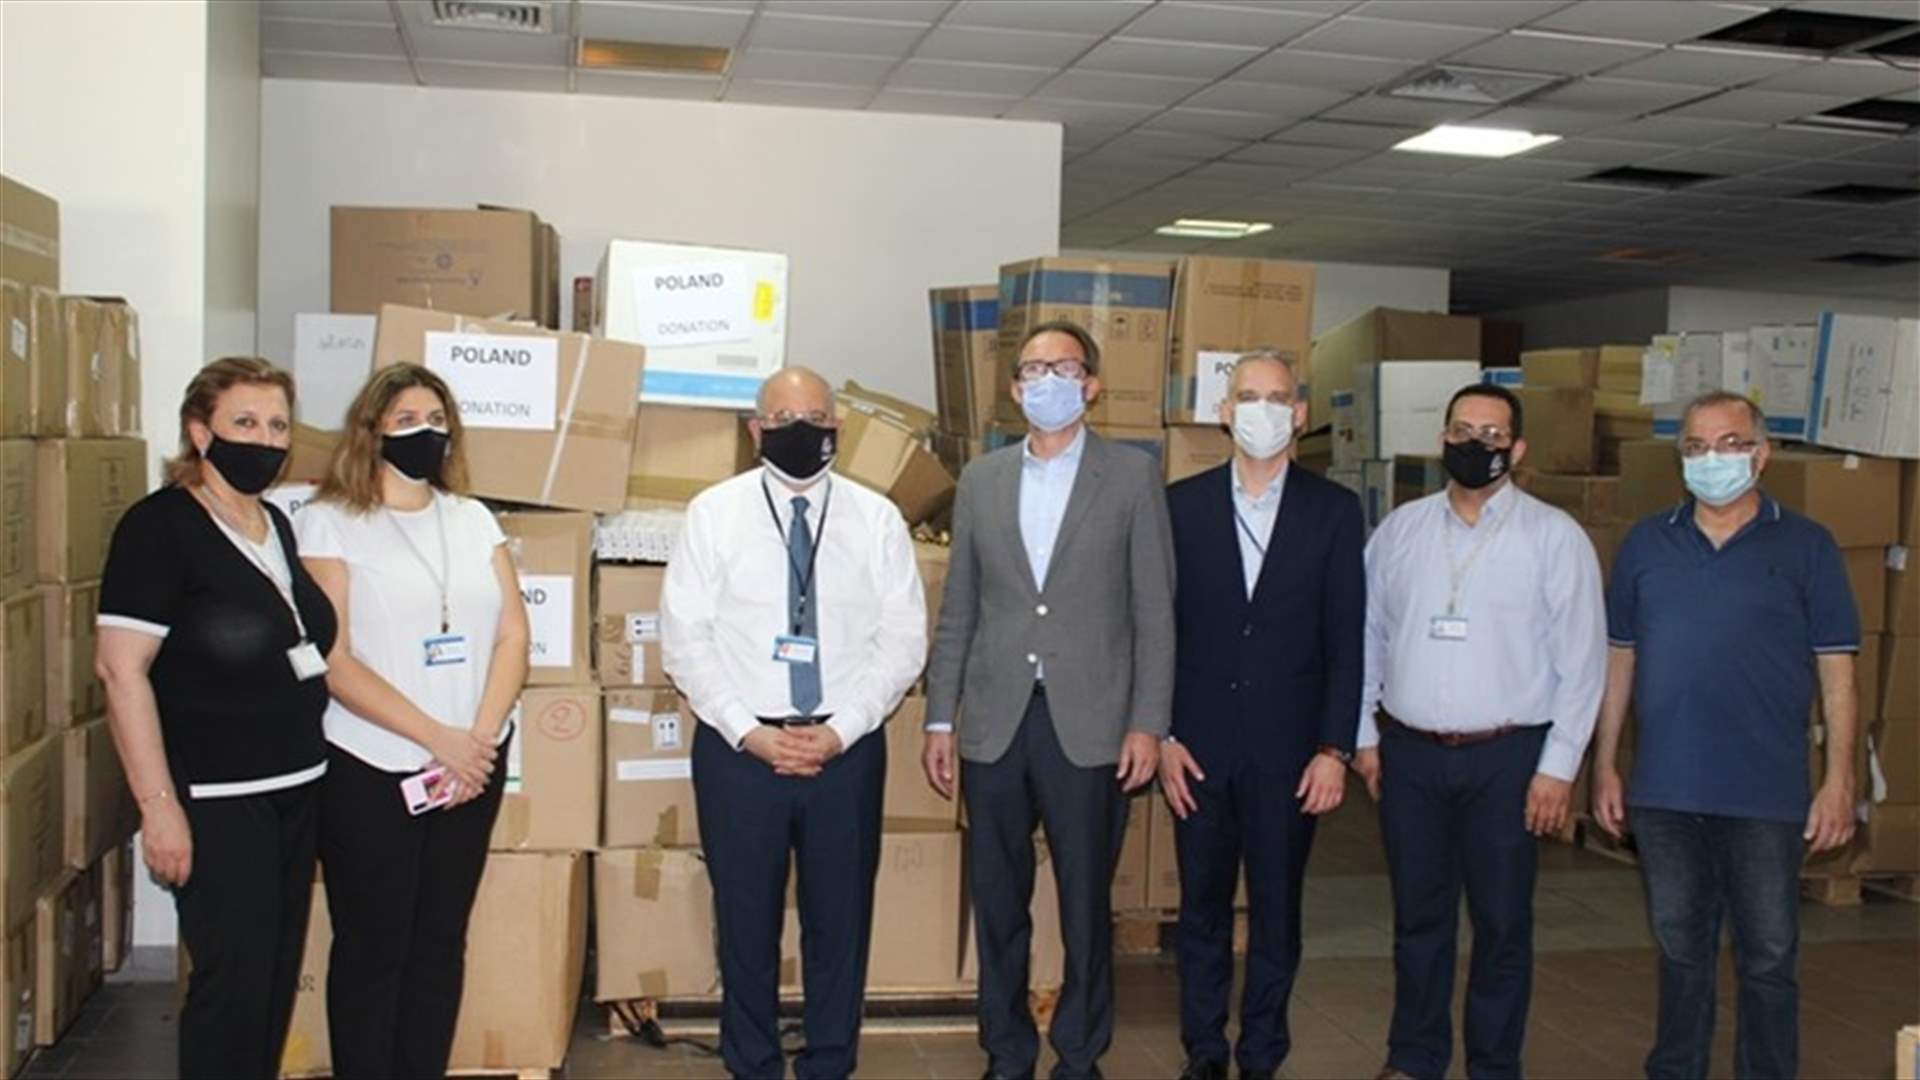 سفير بولندا زار مستشفى الحريري لتقديم هبة من بلاده